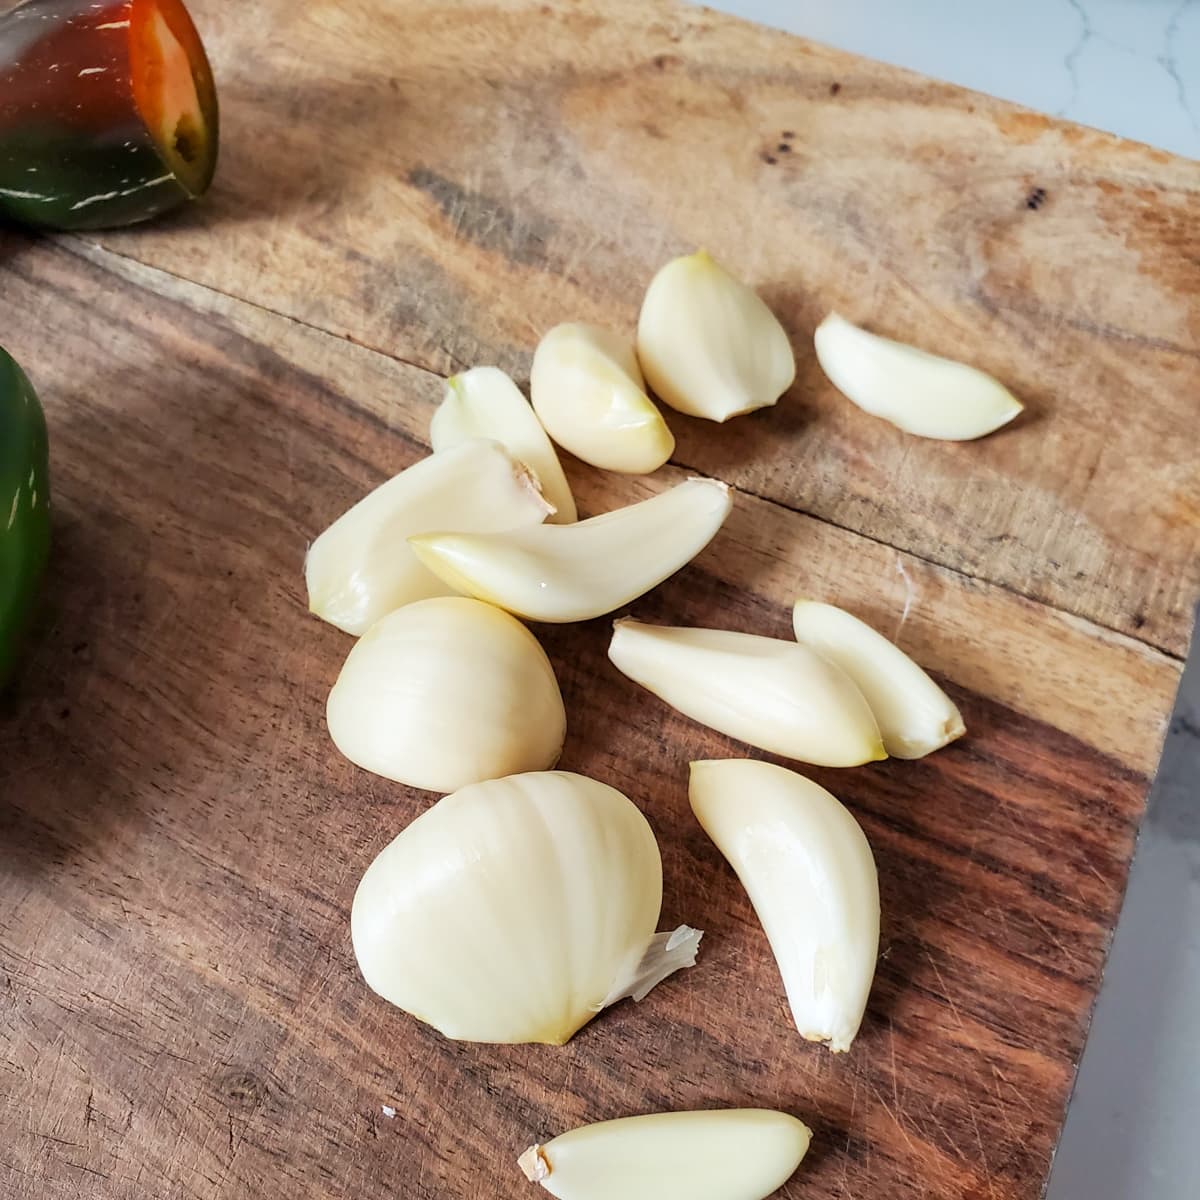 Garlic cloves on a cutting board